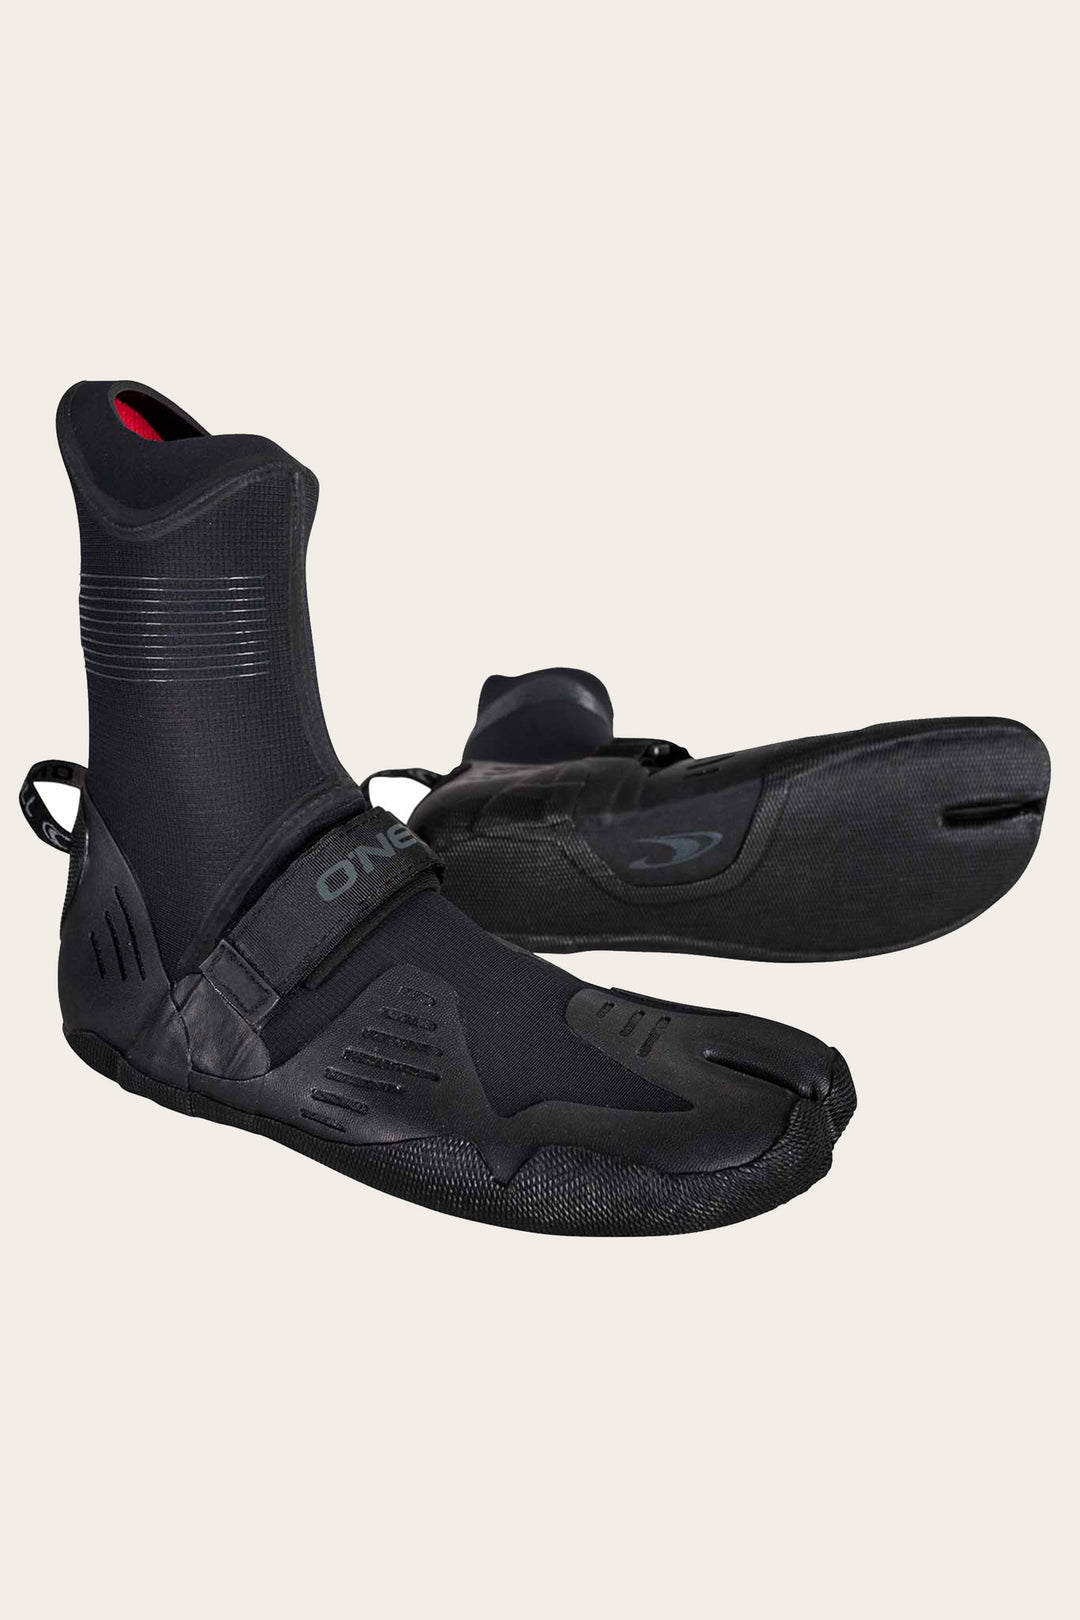 Psycho Tech ST 3/2mm Boot-O'Neill-black,boot,booties,logo,o'neill,oneill wetsuit,wetsuit